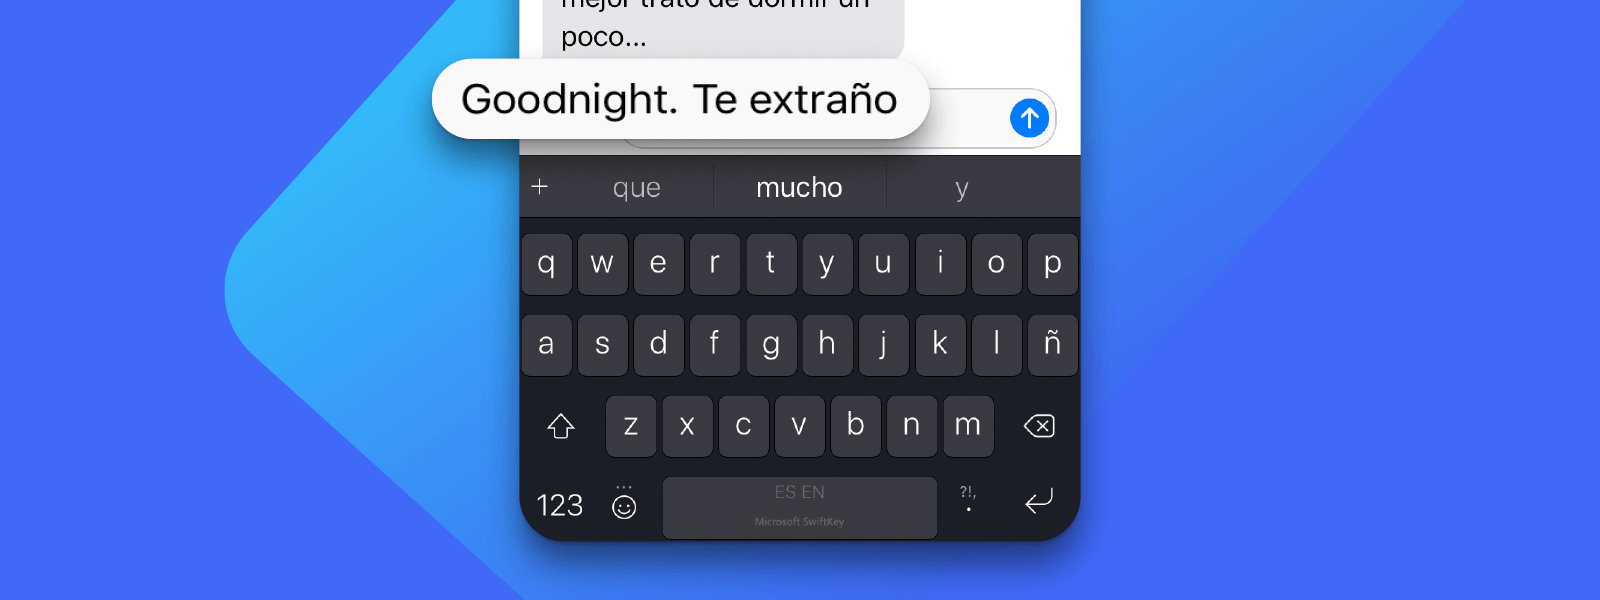 iPhone que utiliza SwiftKey para escribir en varios idiomas